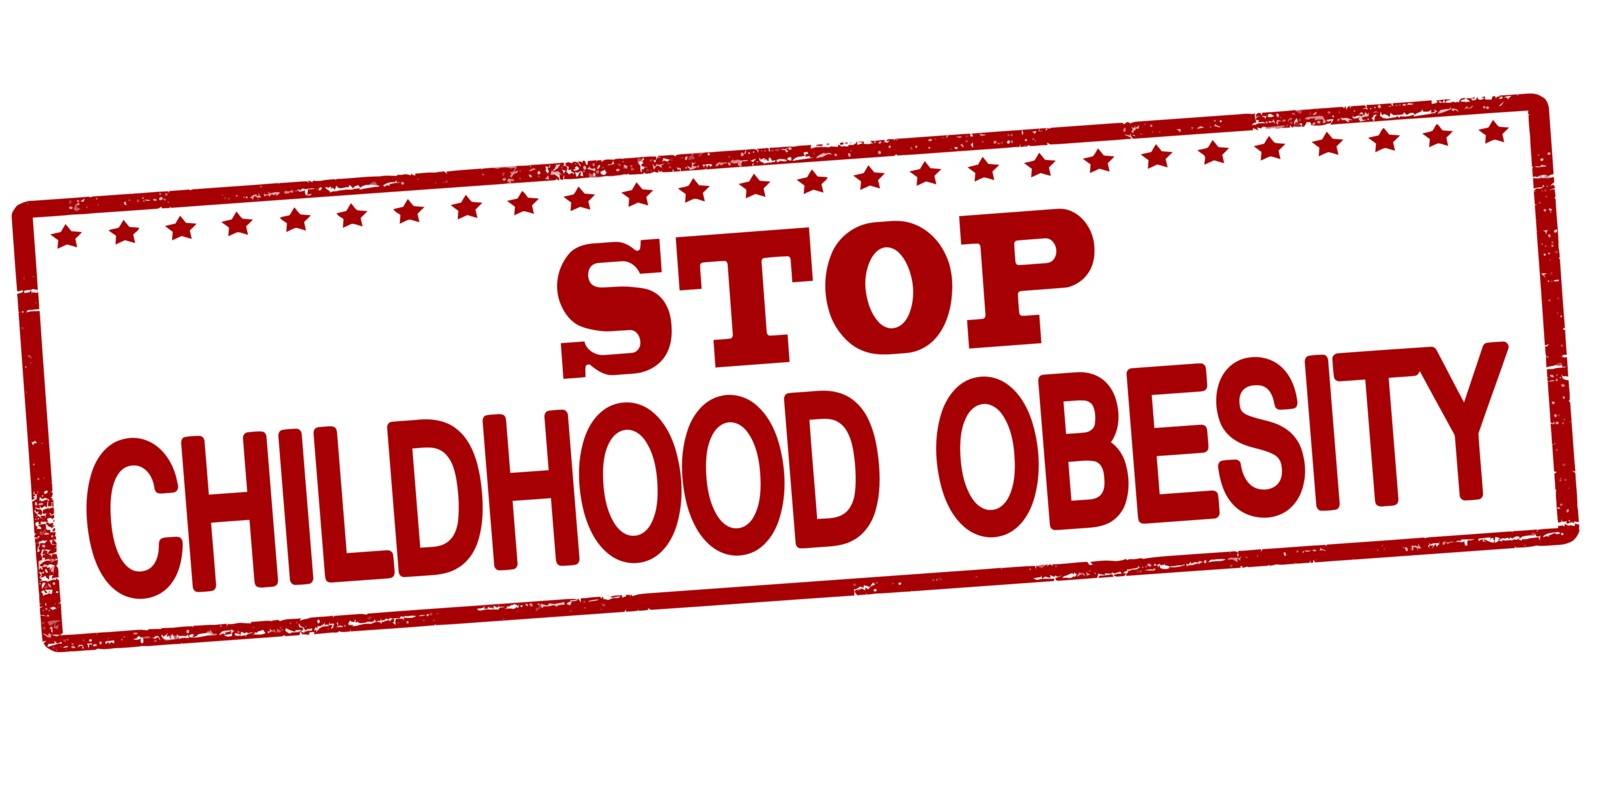 Stop childhood obesity by carmenbobo